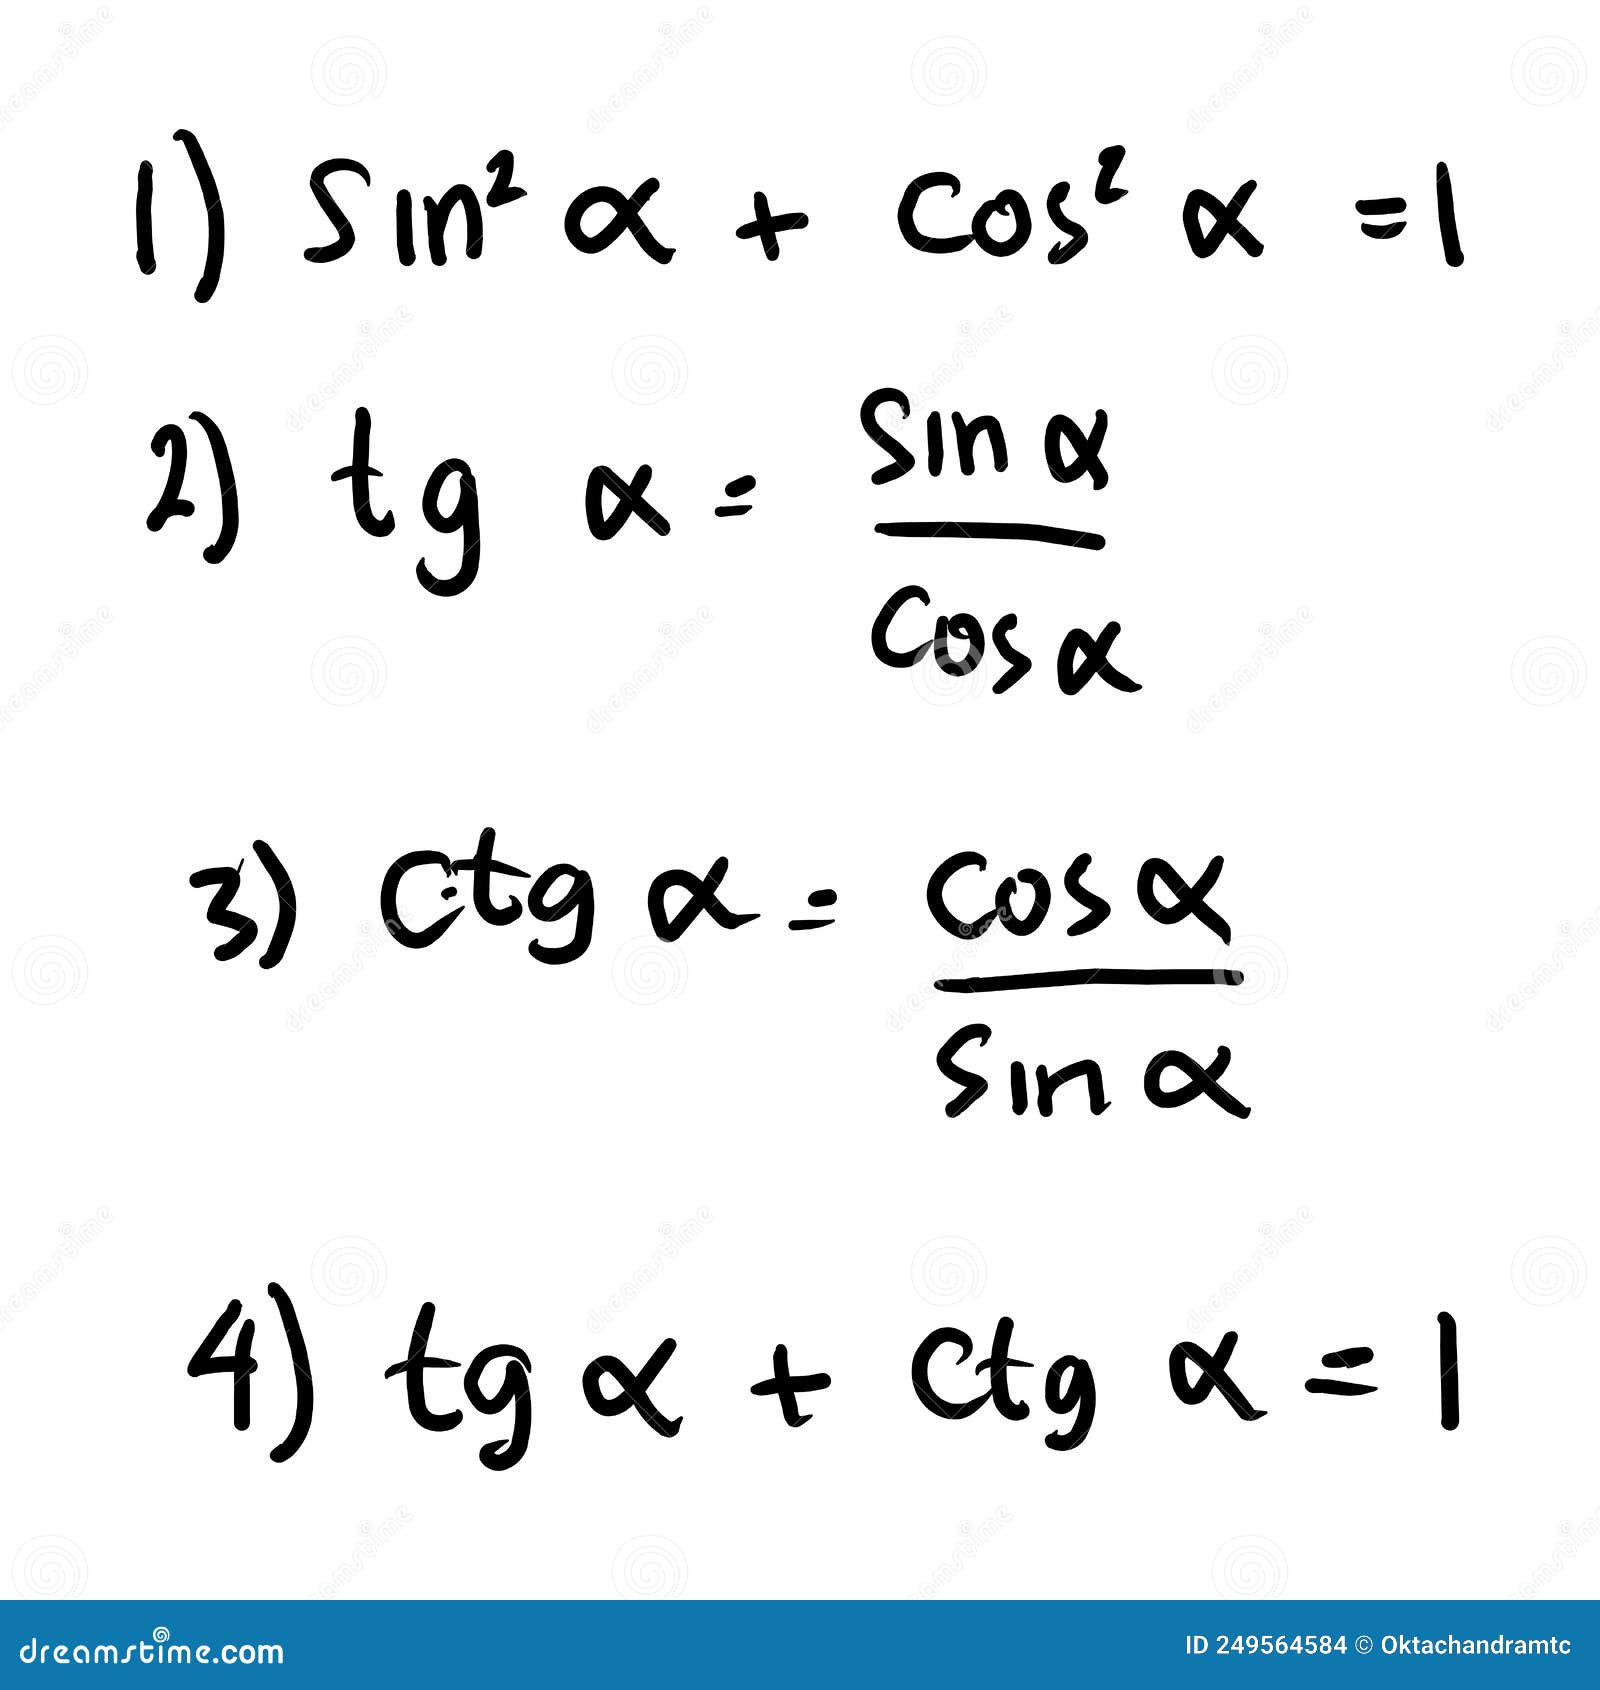 basic trigonometric identities. formulas to calculate sine, cosine, tangent, cotangent.